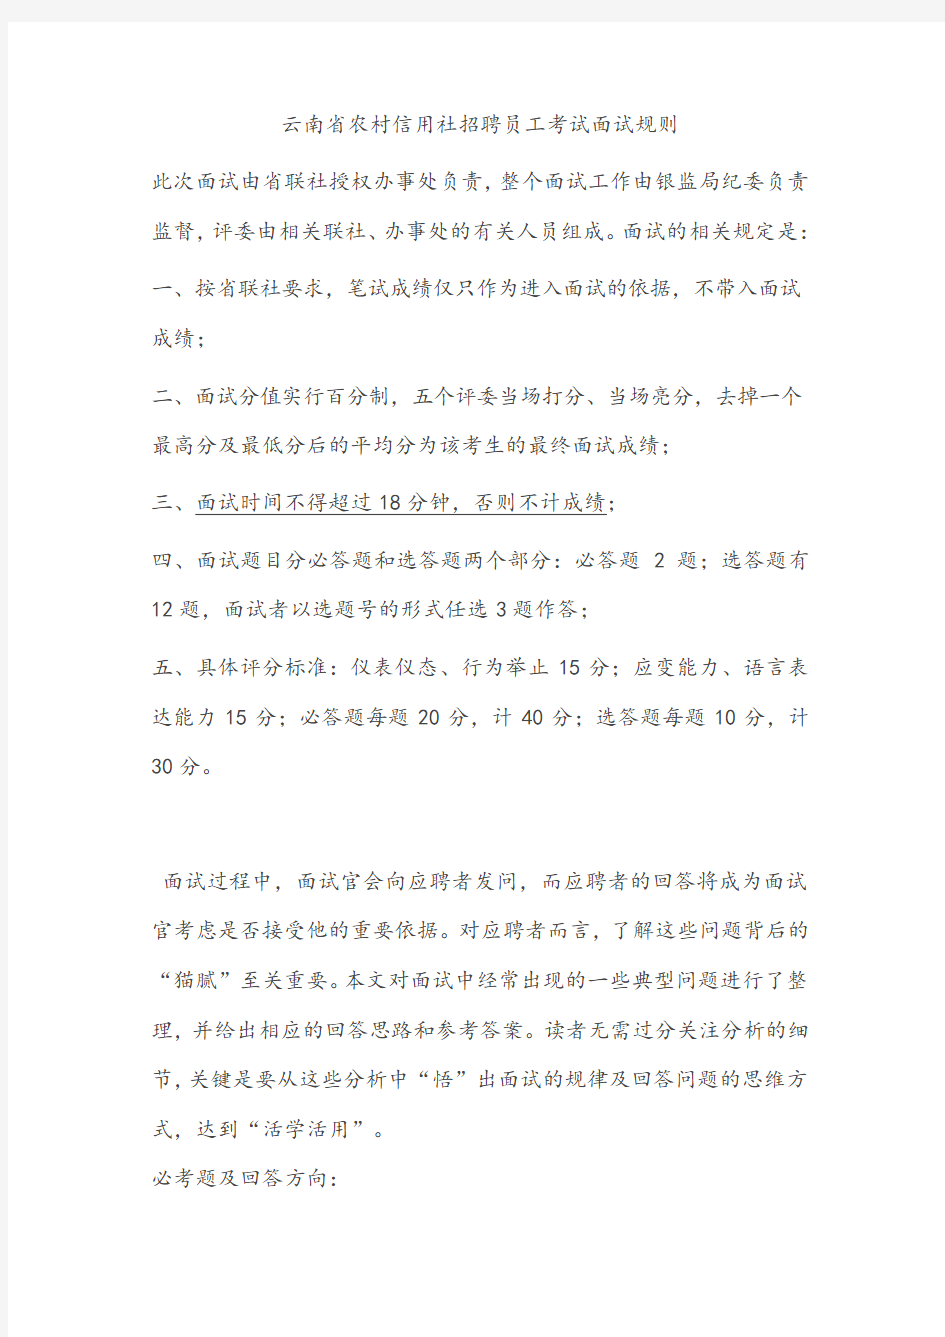 云南省农村信用社招聘员工考试面试规则(已看)